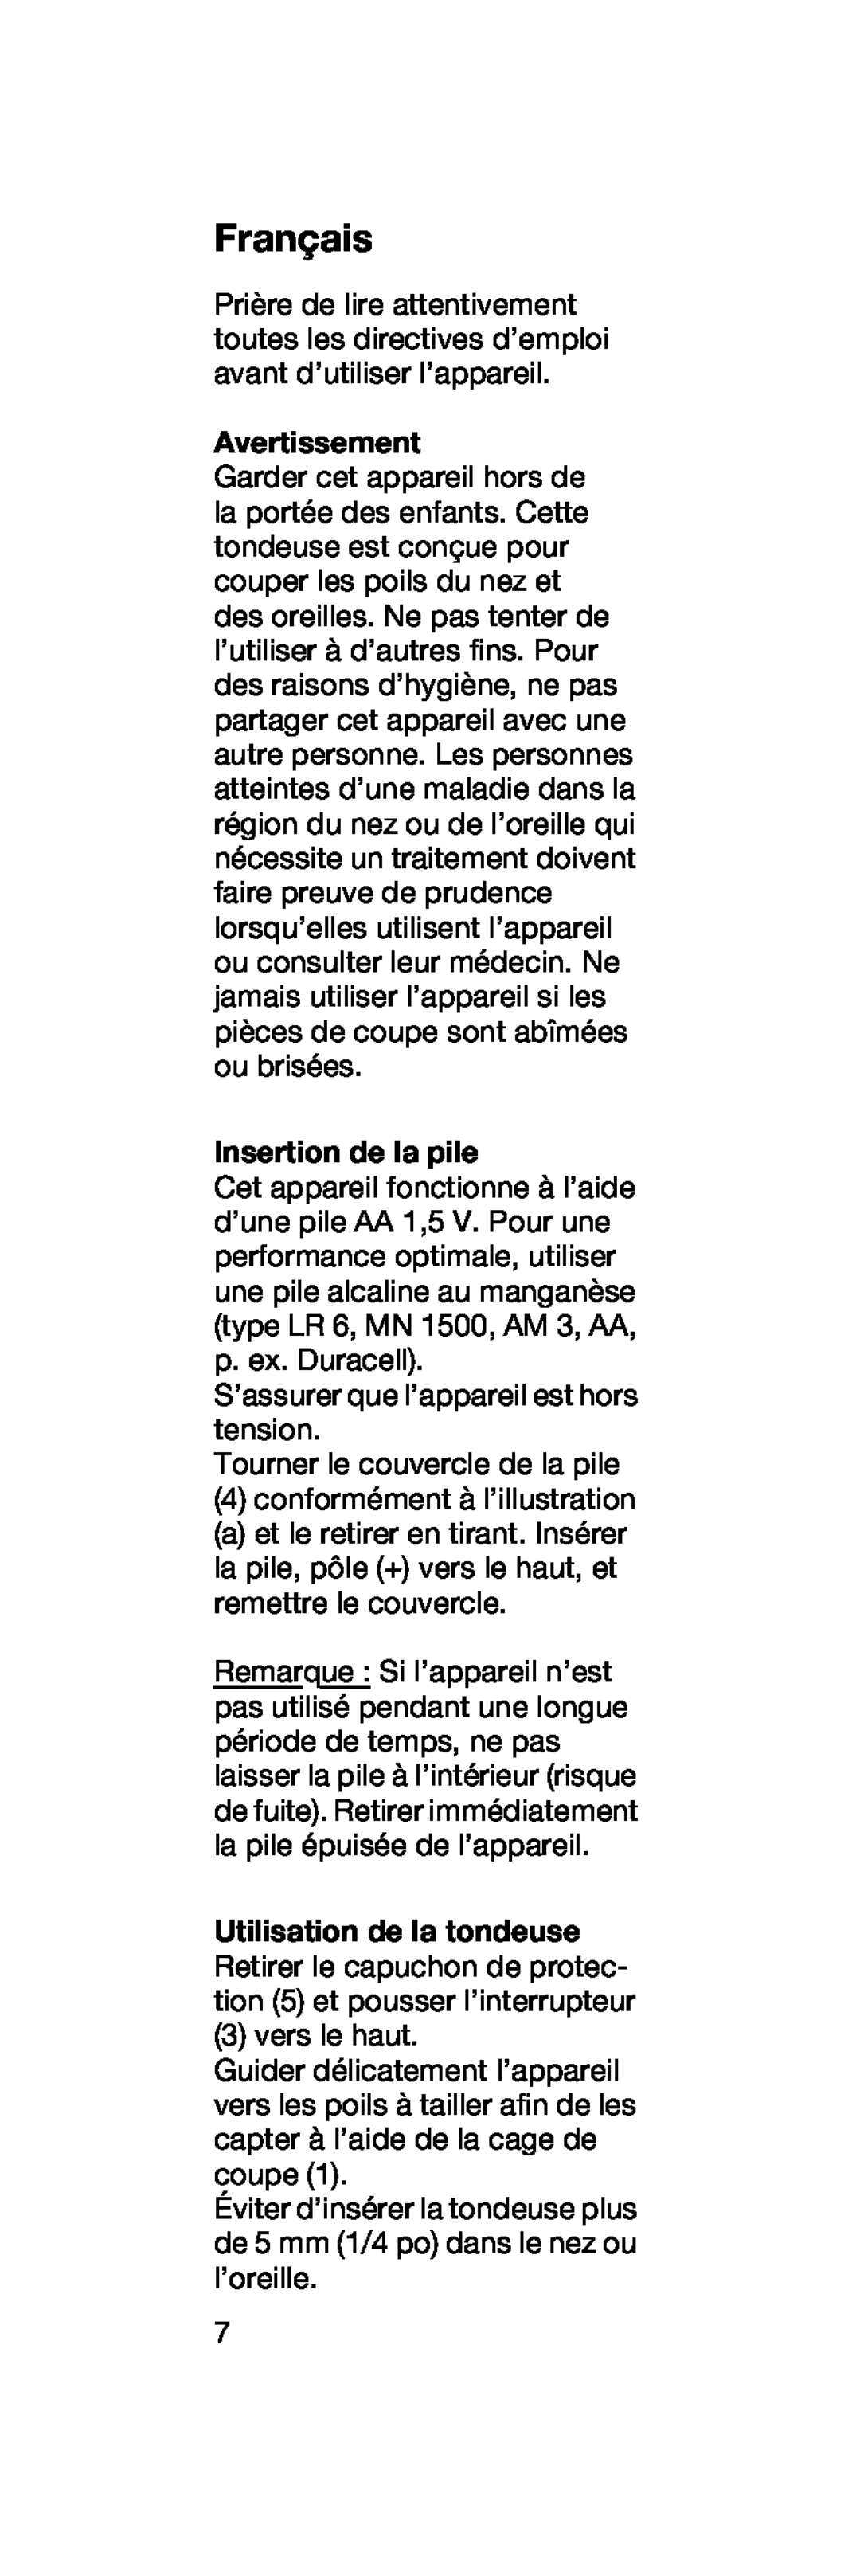 Braun EN 10 manual Français, Avertissement, Insertion de la pile 